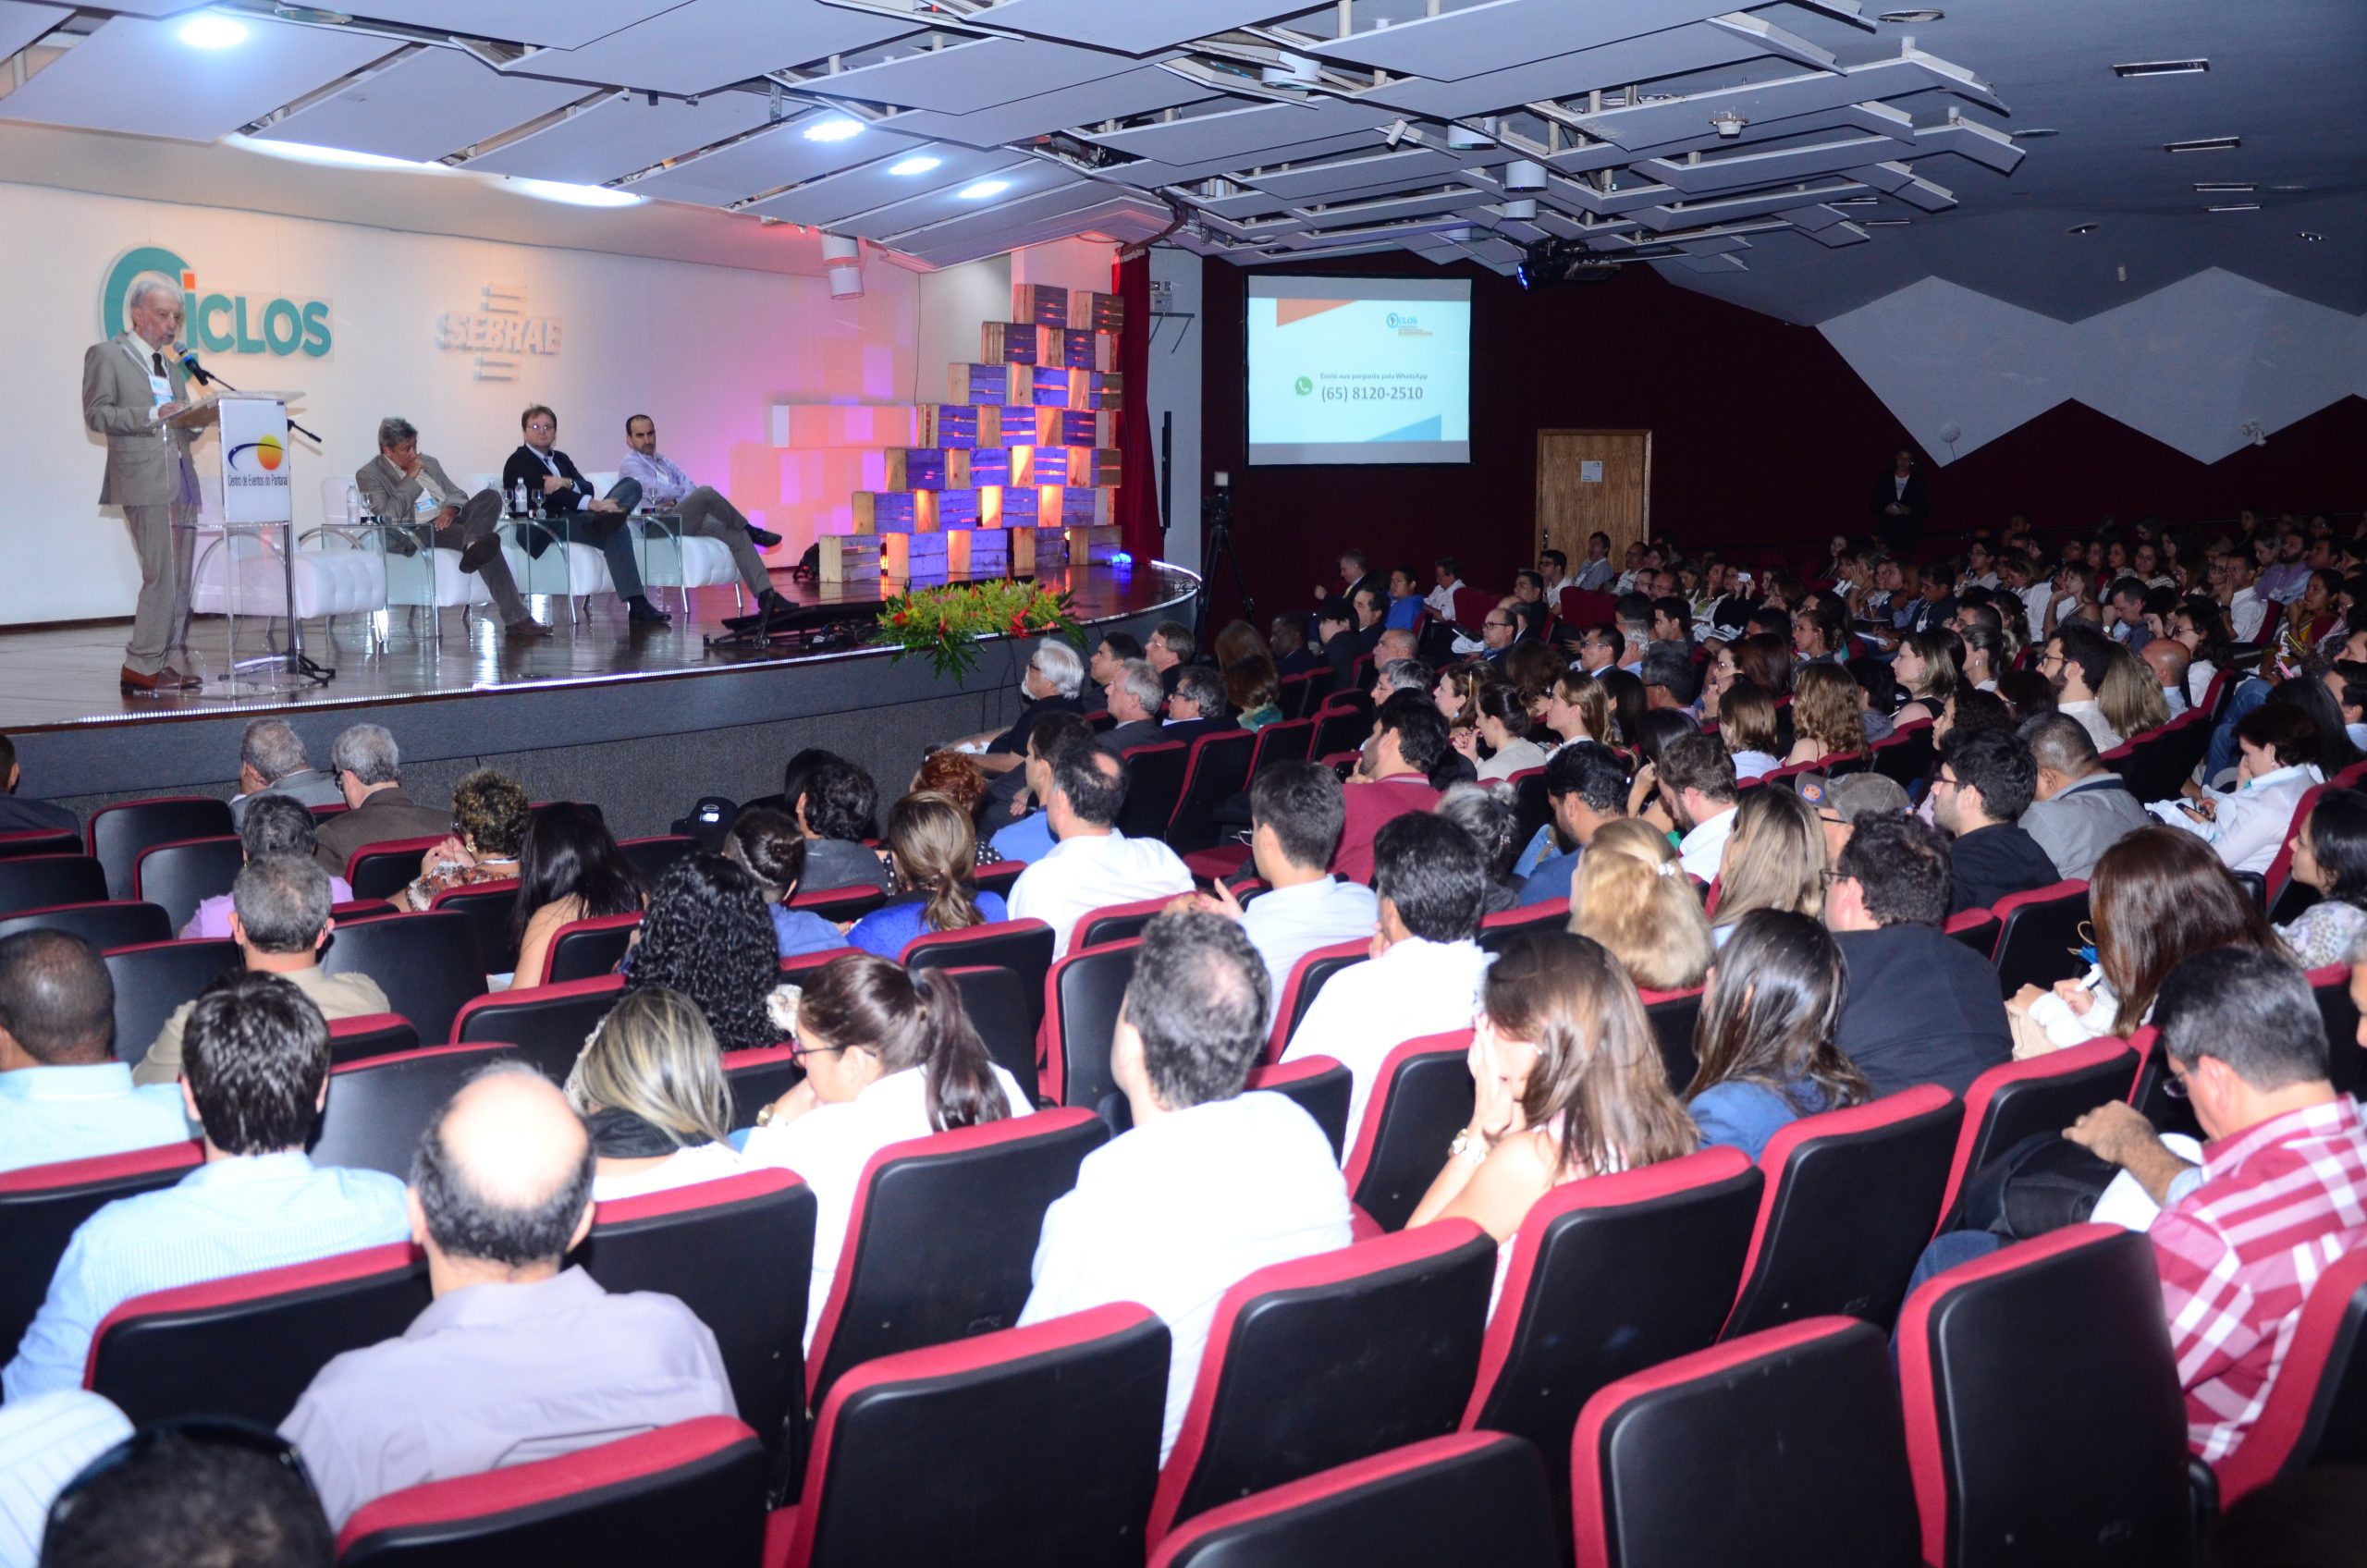 CICLOS: Congresso Internacional de Sustentabilidade para Pequenos Negócios chega à 5ª edição